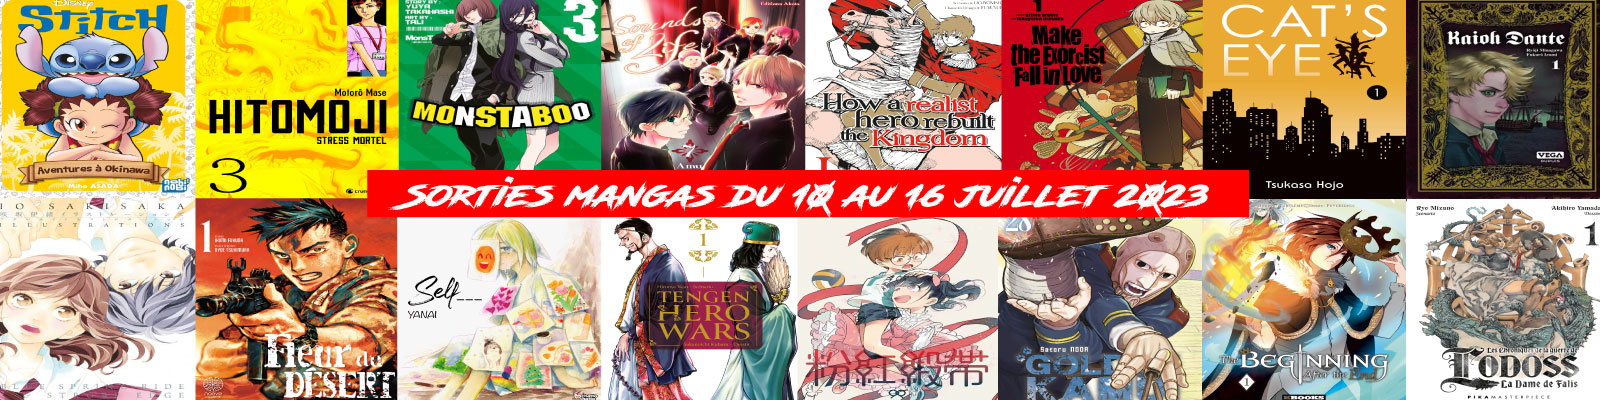 Sorties mangas-du-10-au-16-juillet-2023-2